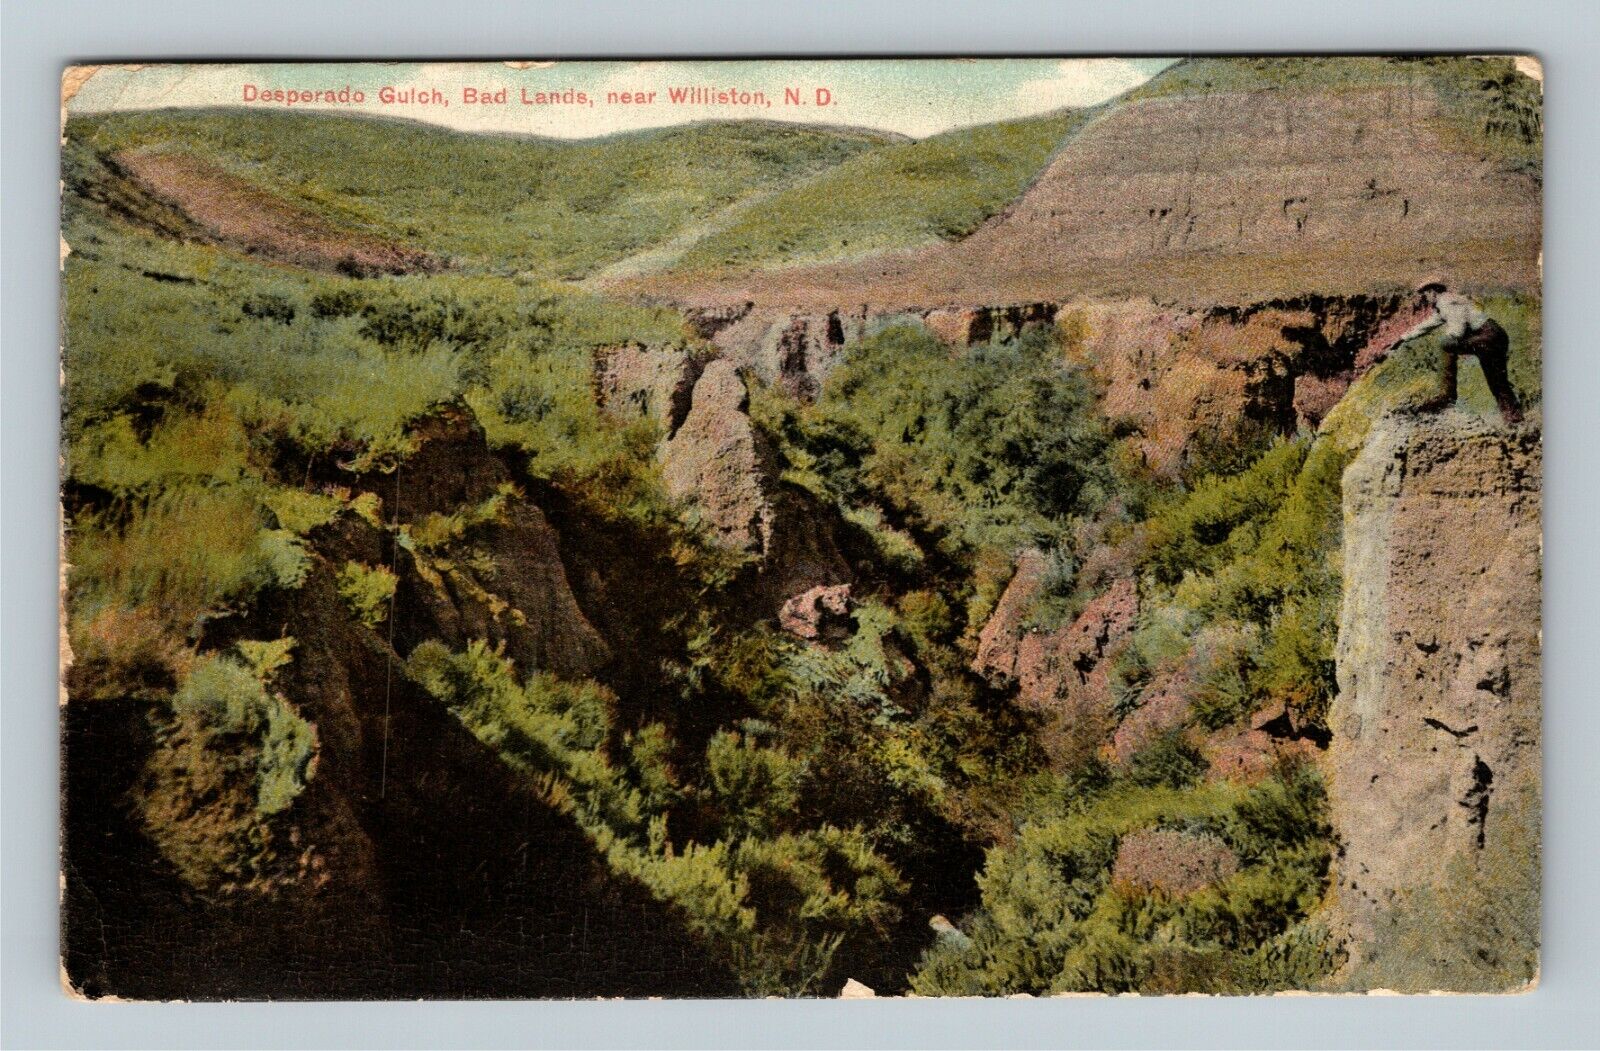 Williston ND, Man, Bad Lands Desperado Gulch Vintage North Dakota c1912 Postcard